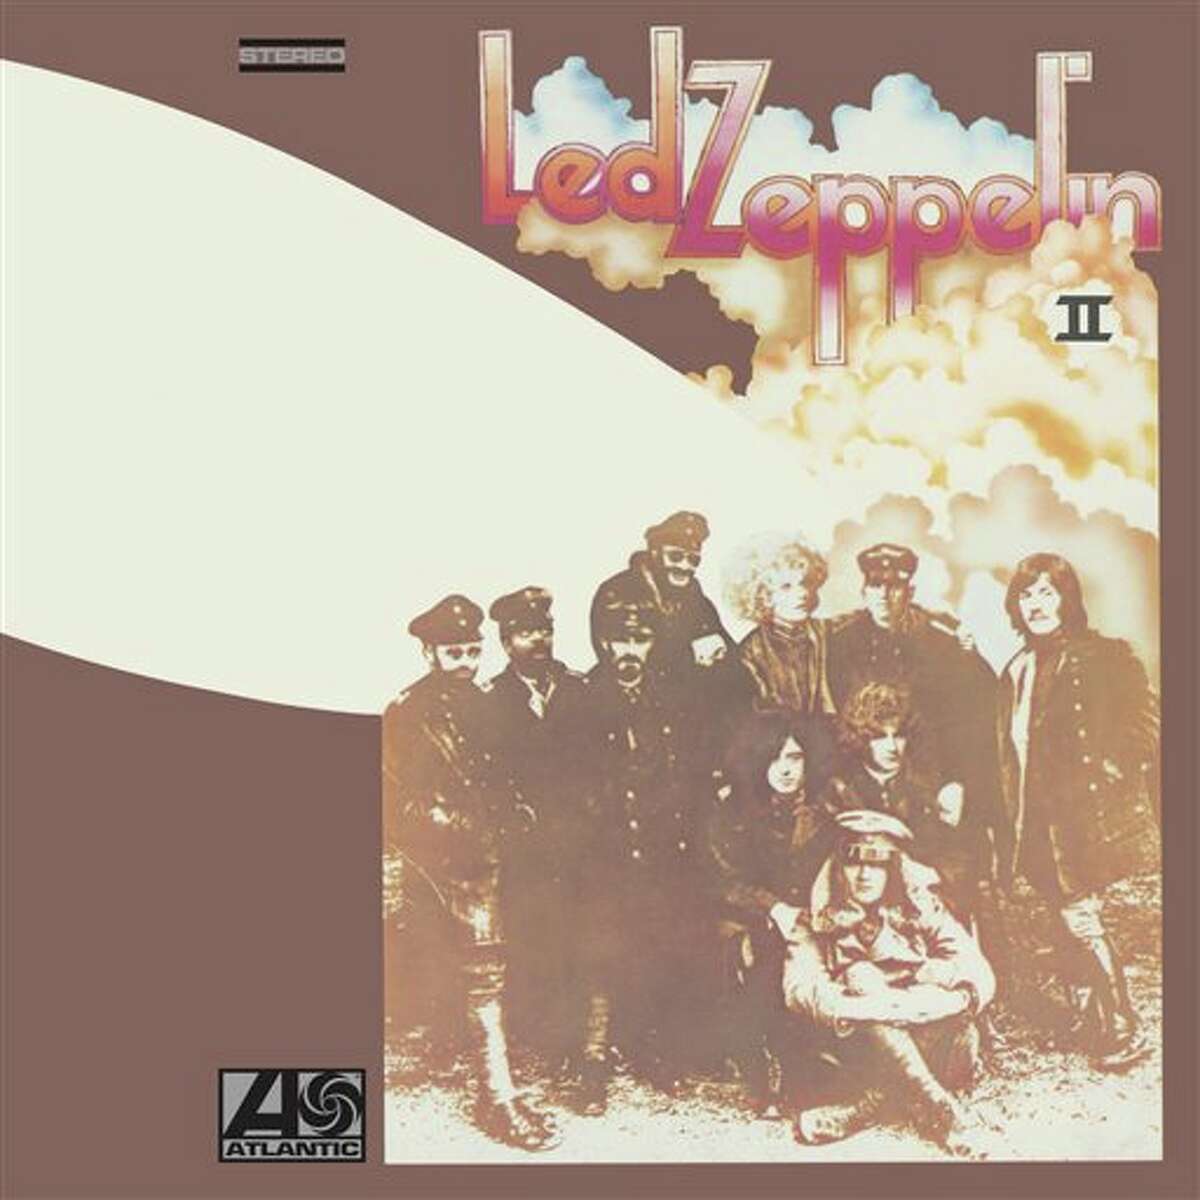 No. 48 Led Zeppelin: Led Zeppelin II